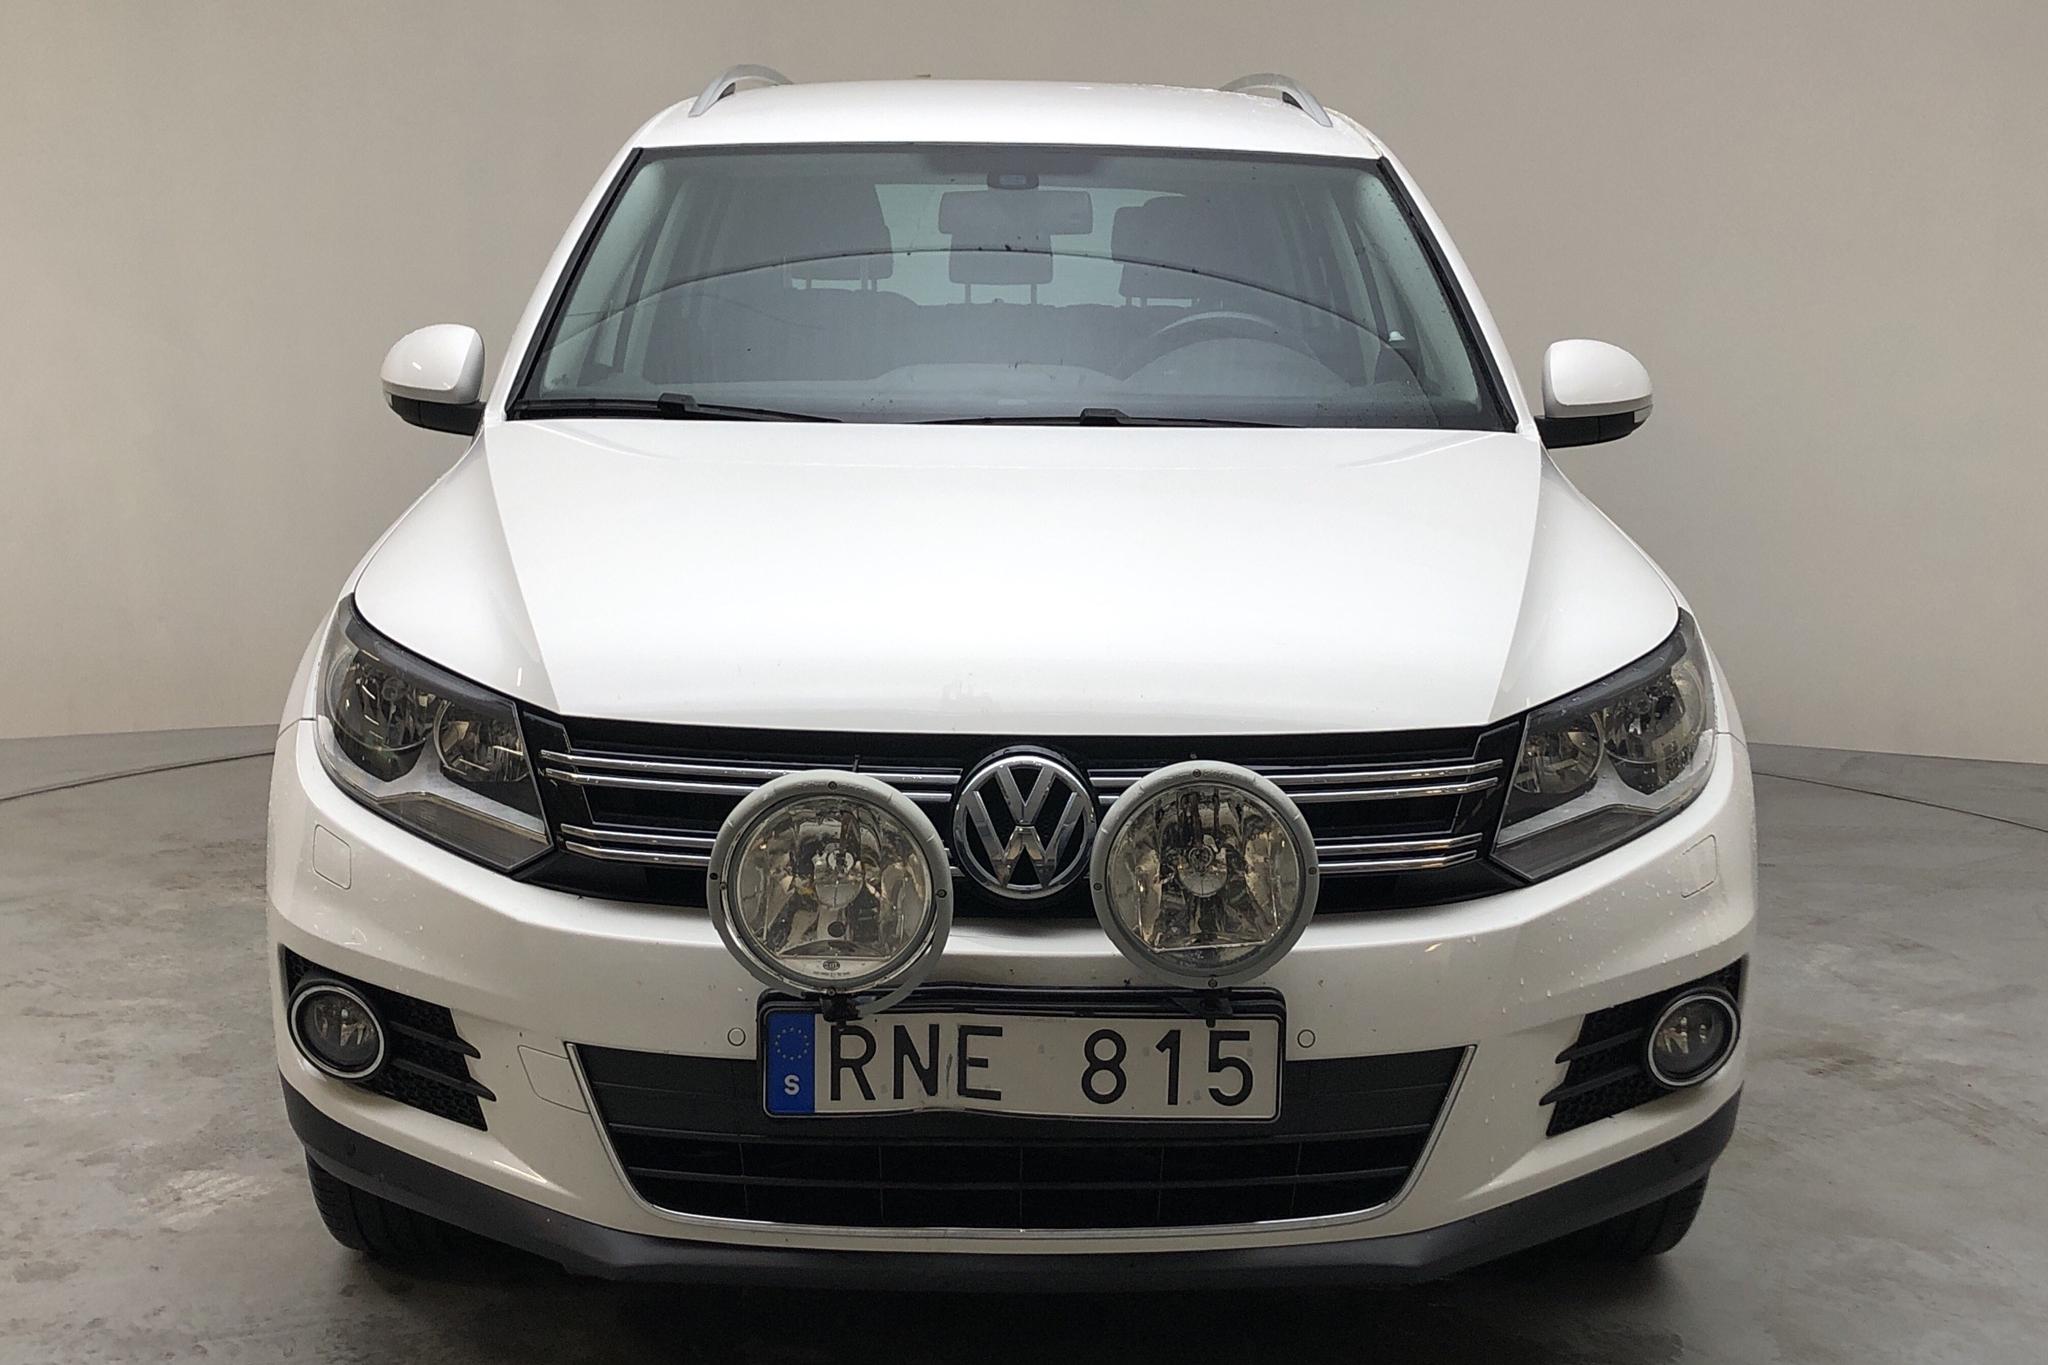 VW Tiguan 2.0 TDI 4MOTION BlueMotion Technology (140hk) - 133 040 km - Automatic - white - 2013